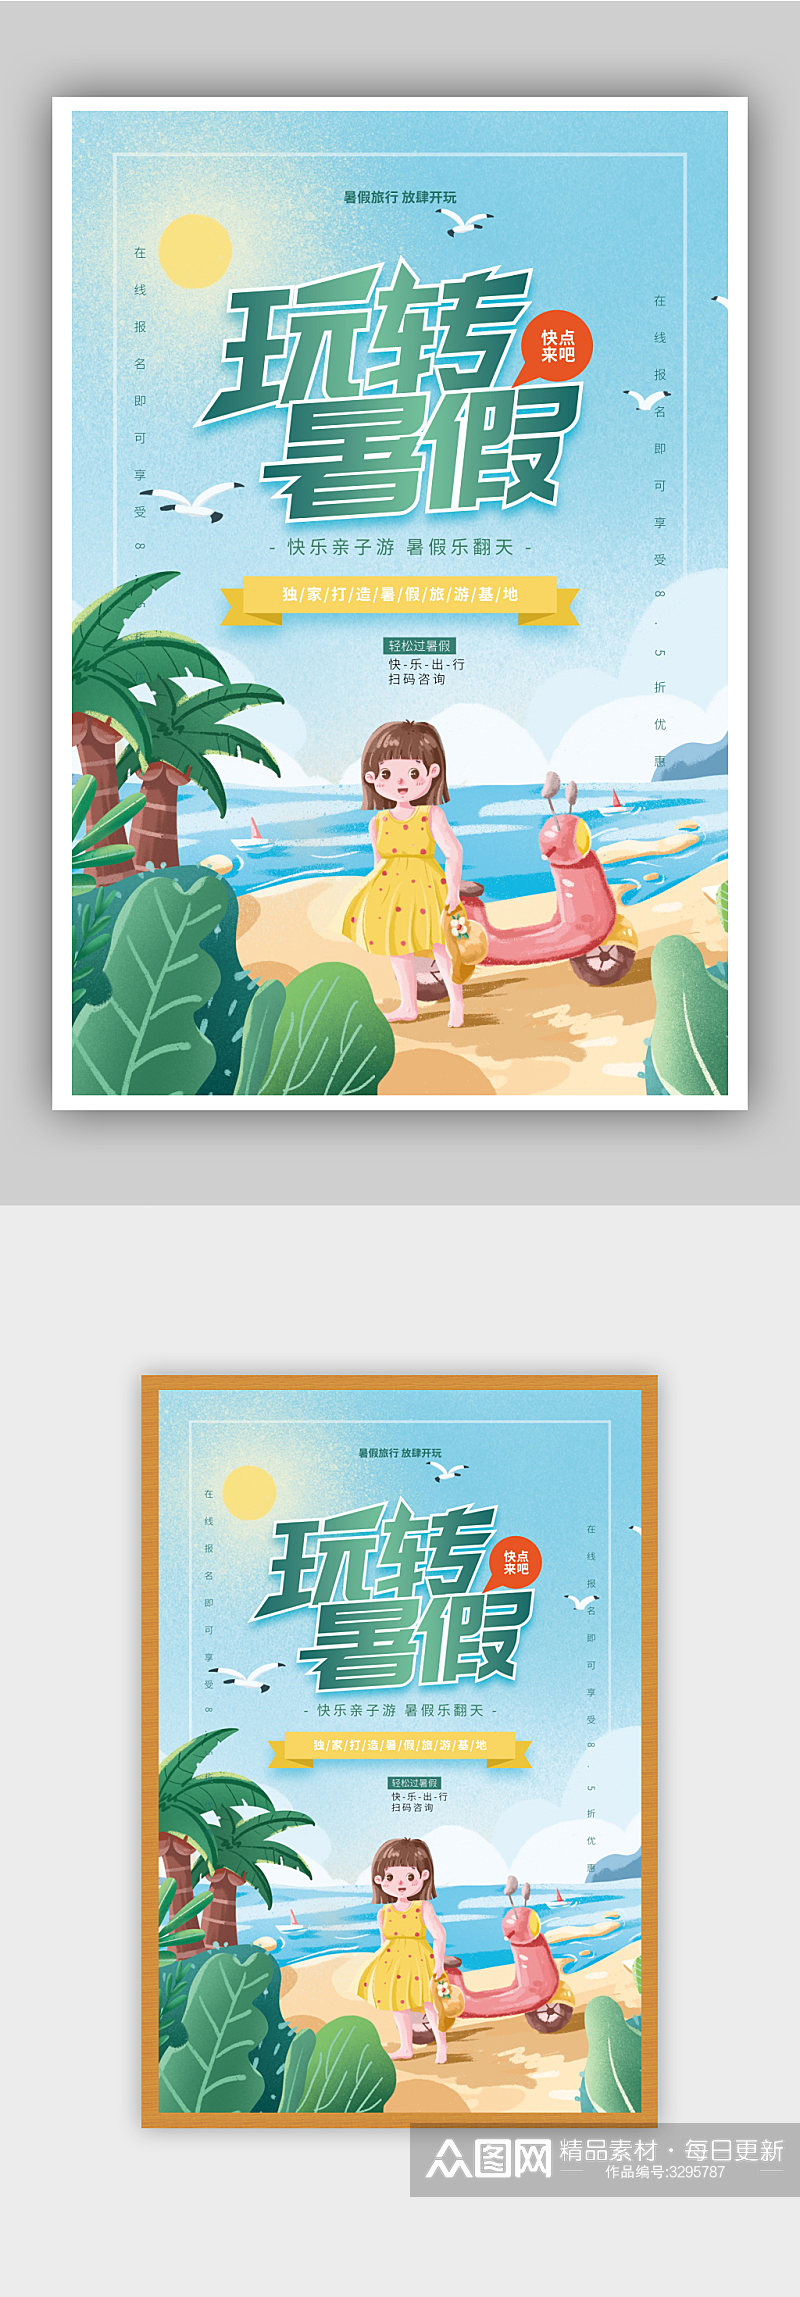 暑假玩转暑假旅游宣传海报素材